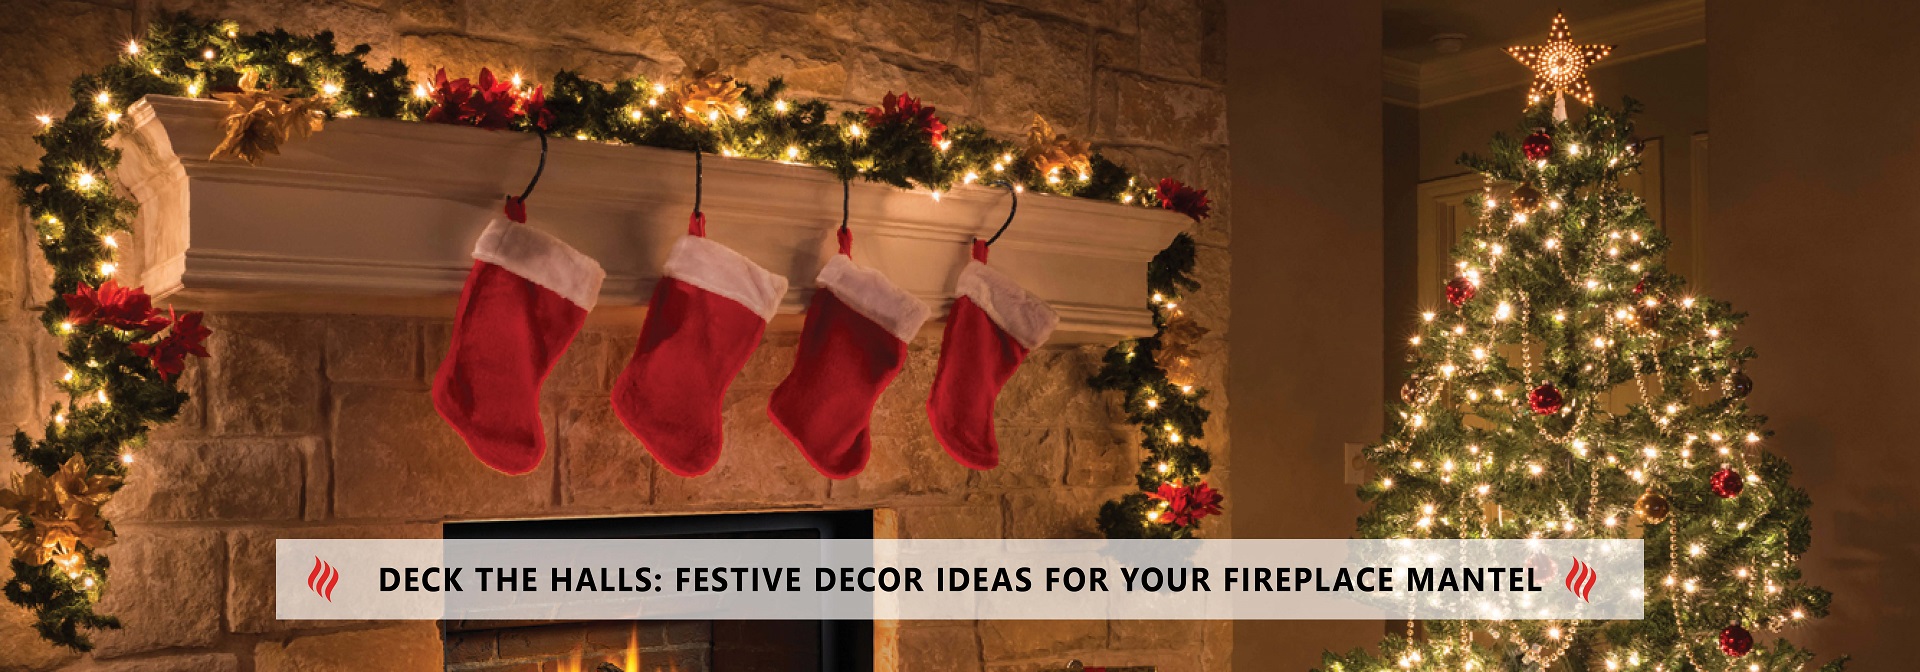 Deck the Halls: Festive Décor Ideas for Your Fireplace Mantel  